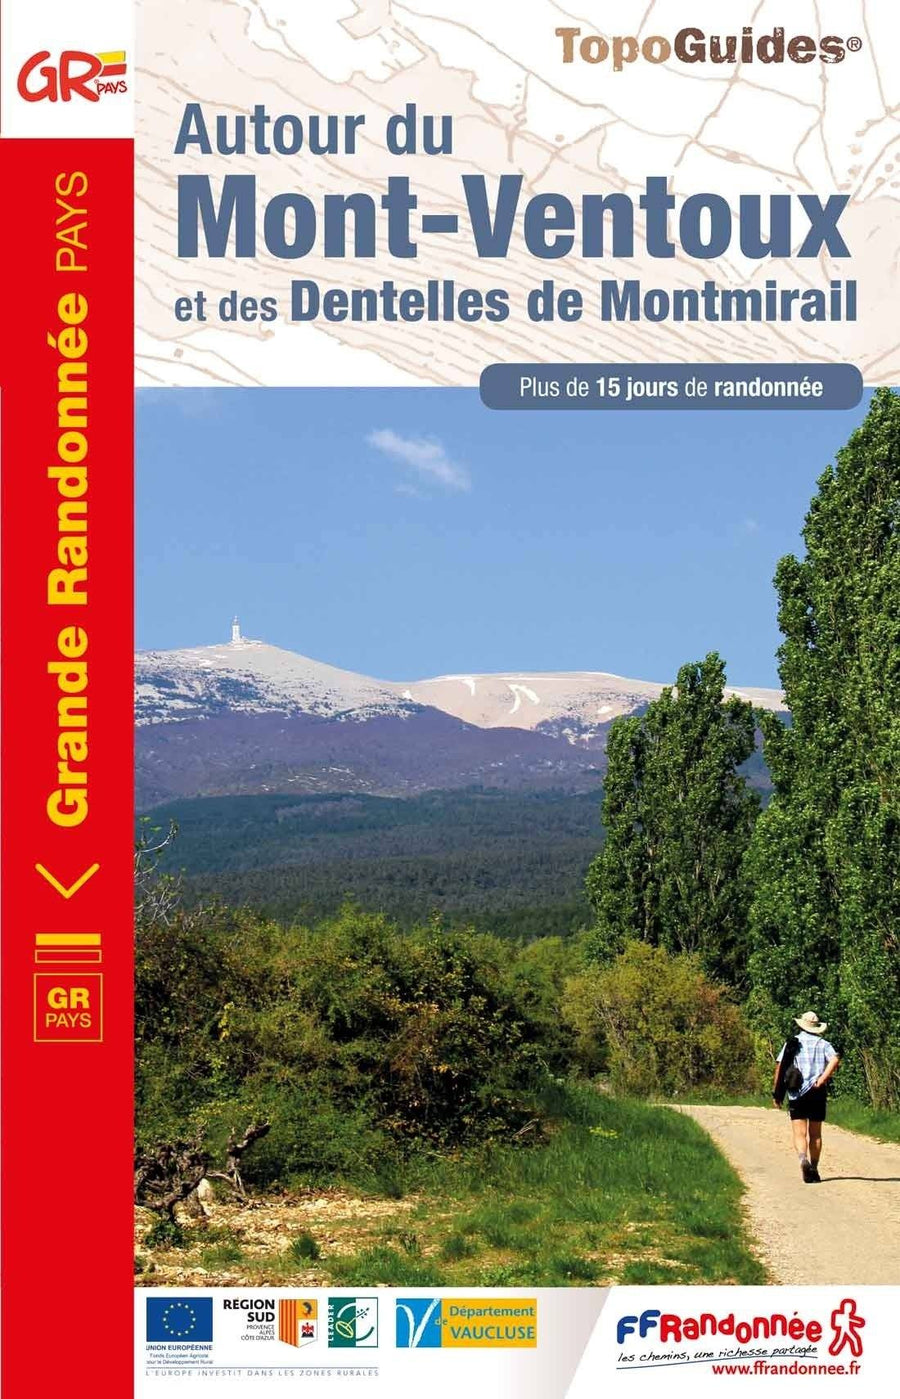 Topoguide de randonnée - Autour du mont et des Dentelles de Montmirail | FFR guide de randonnée FFR - Fédération Française de Randonnée 